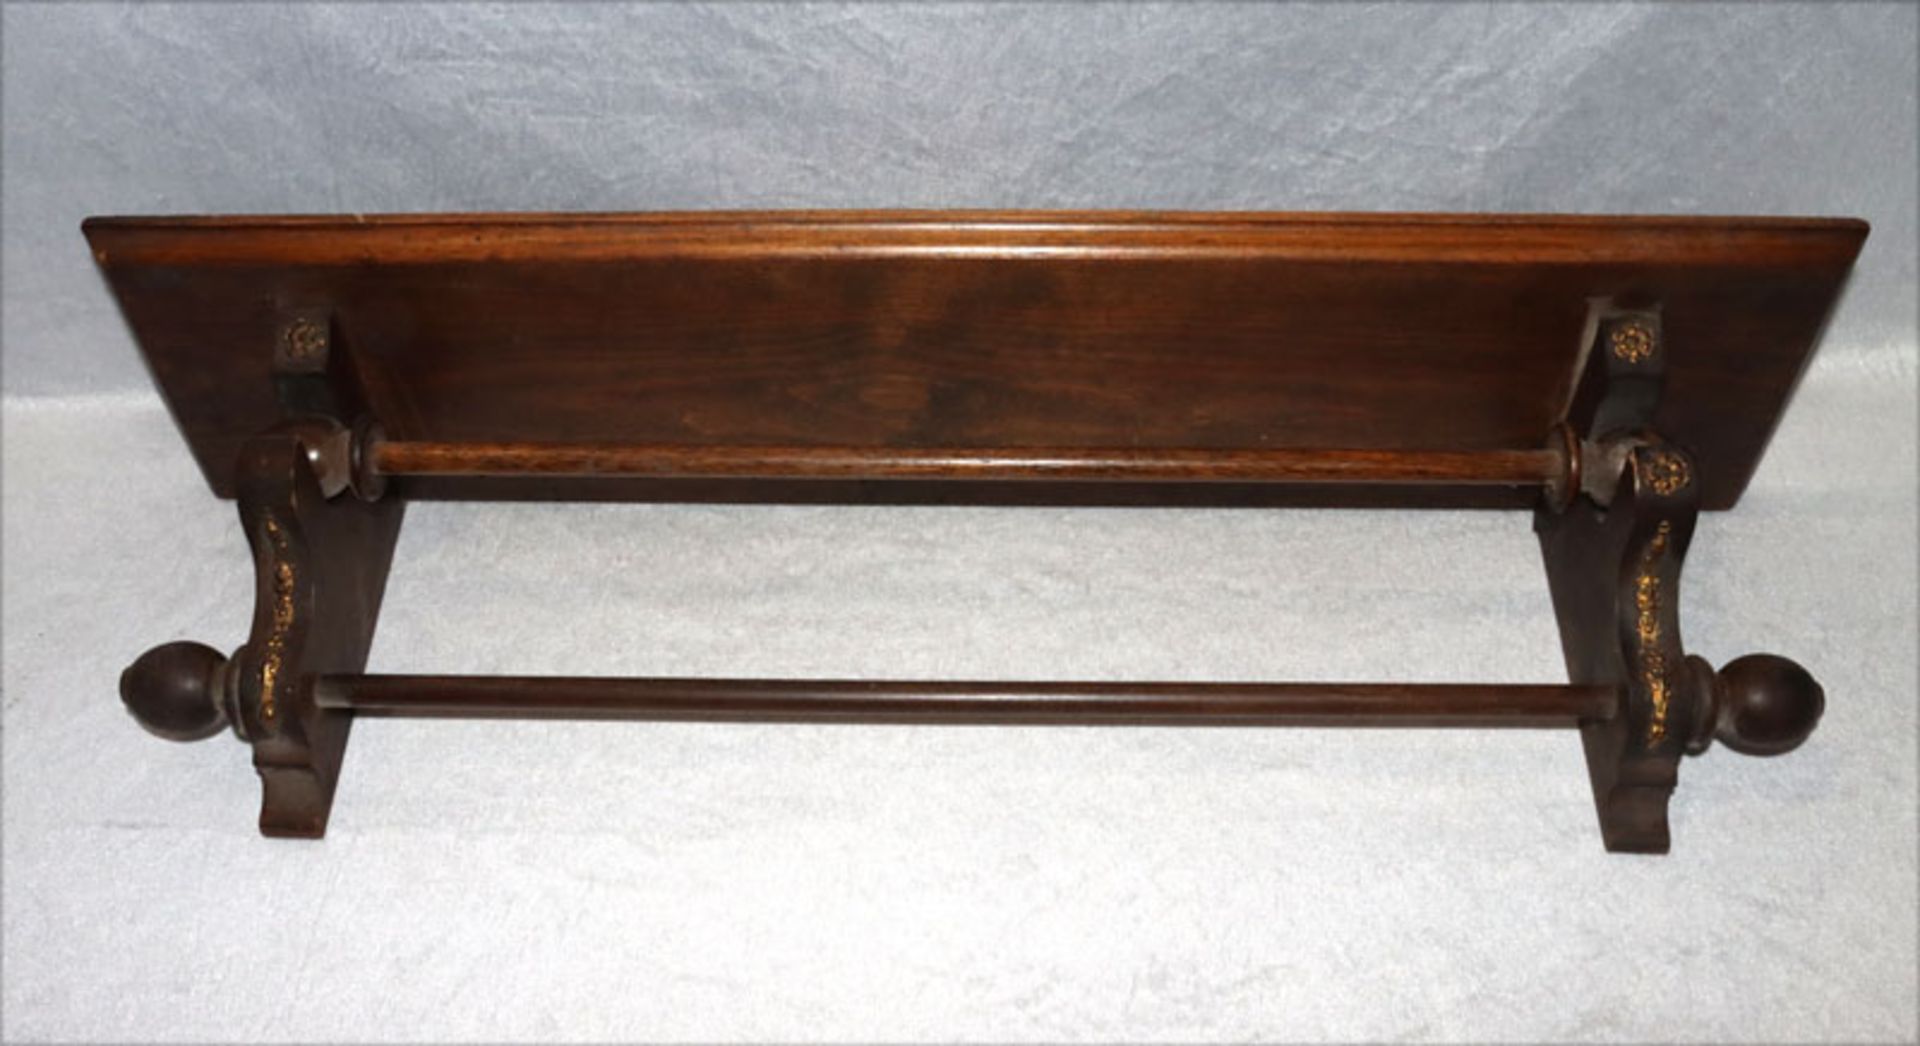 Holz Wand-Handtuchhalter, gebeizt mit Metallverzierungen, H 20 cm, B 72 cm, T 17 cm,